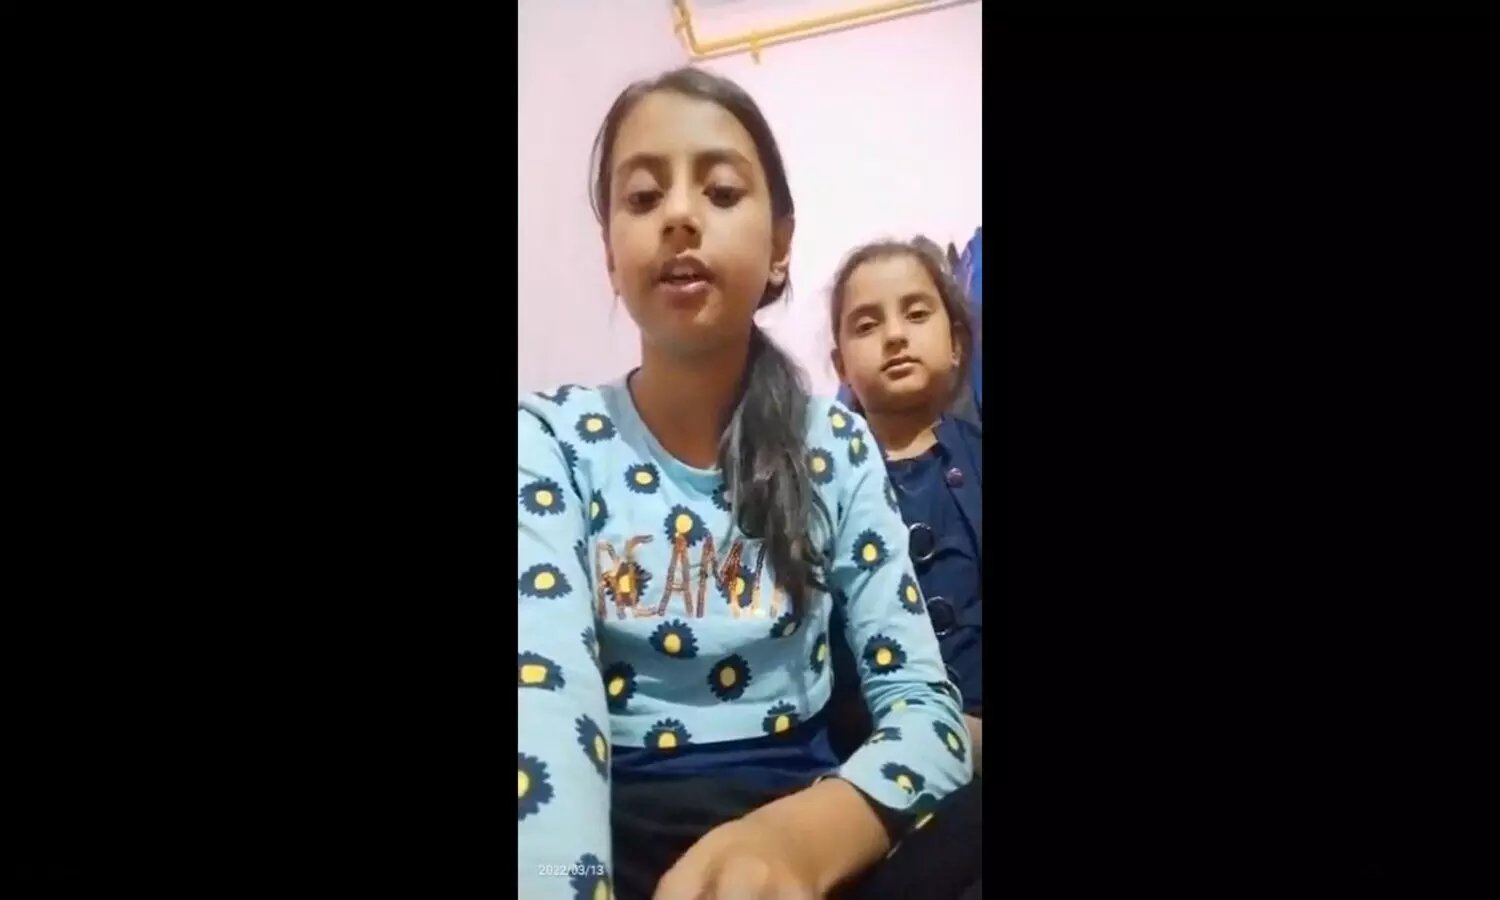 कोरोना का भयानक दर्द: यूपी की बहनों ने शेयर किया Video, देख रो पड़ेंगे आप